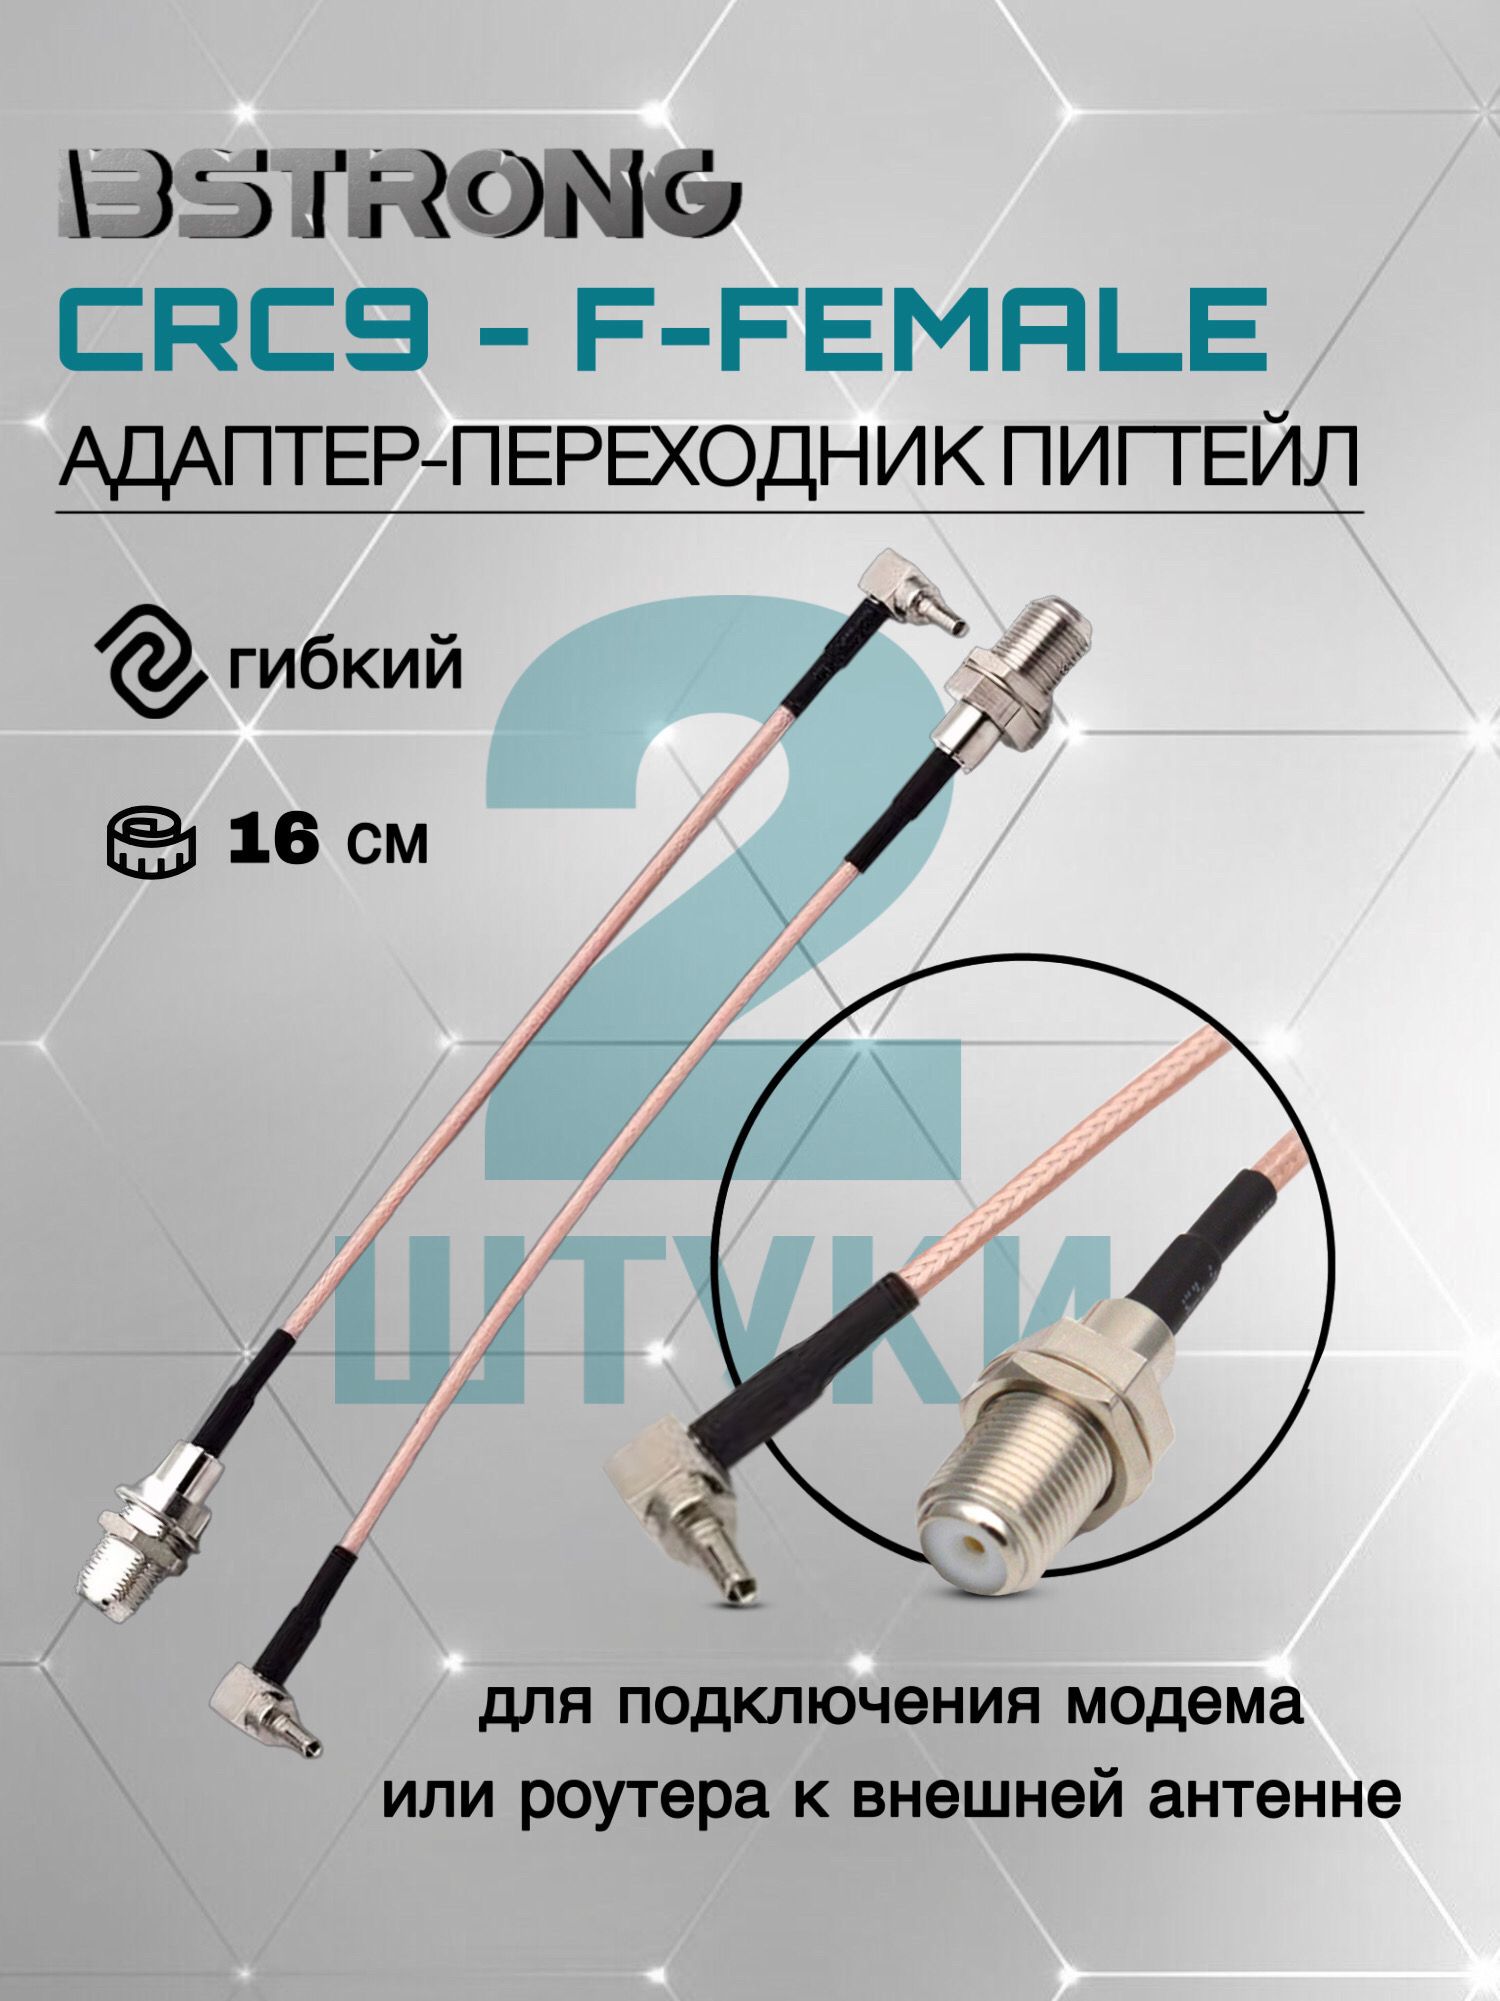 Пигтейл CRC9-F(female)